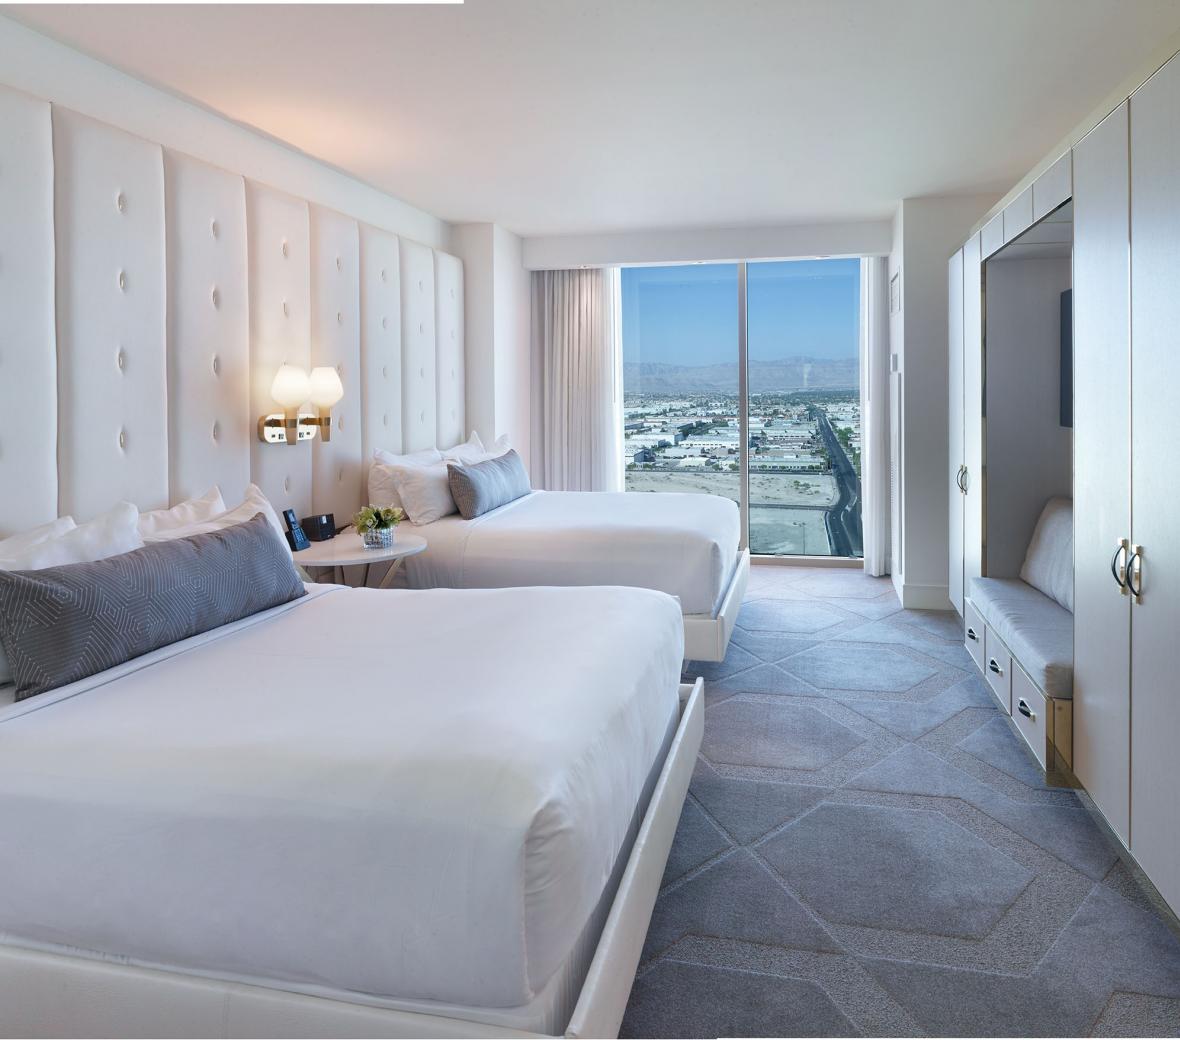 Las Vegas Hotel Rooms & Suites